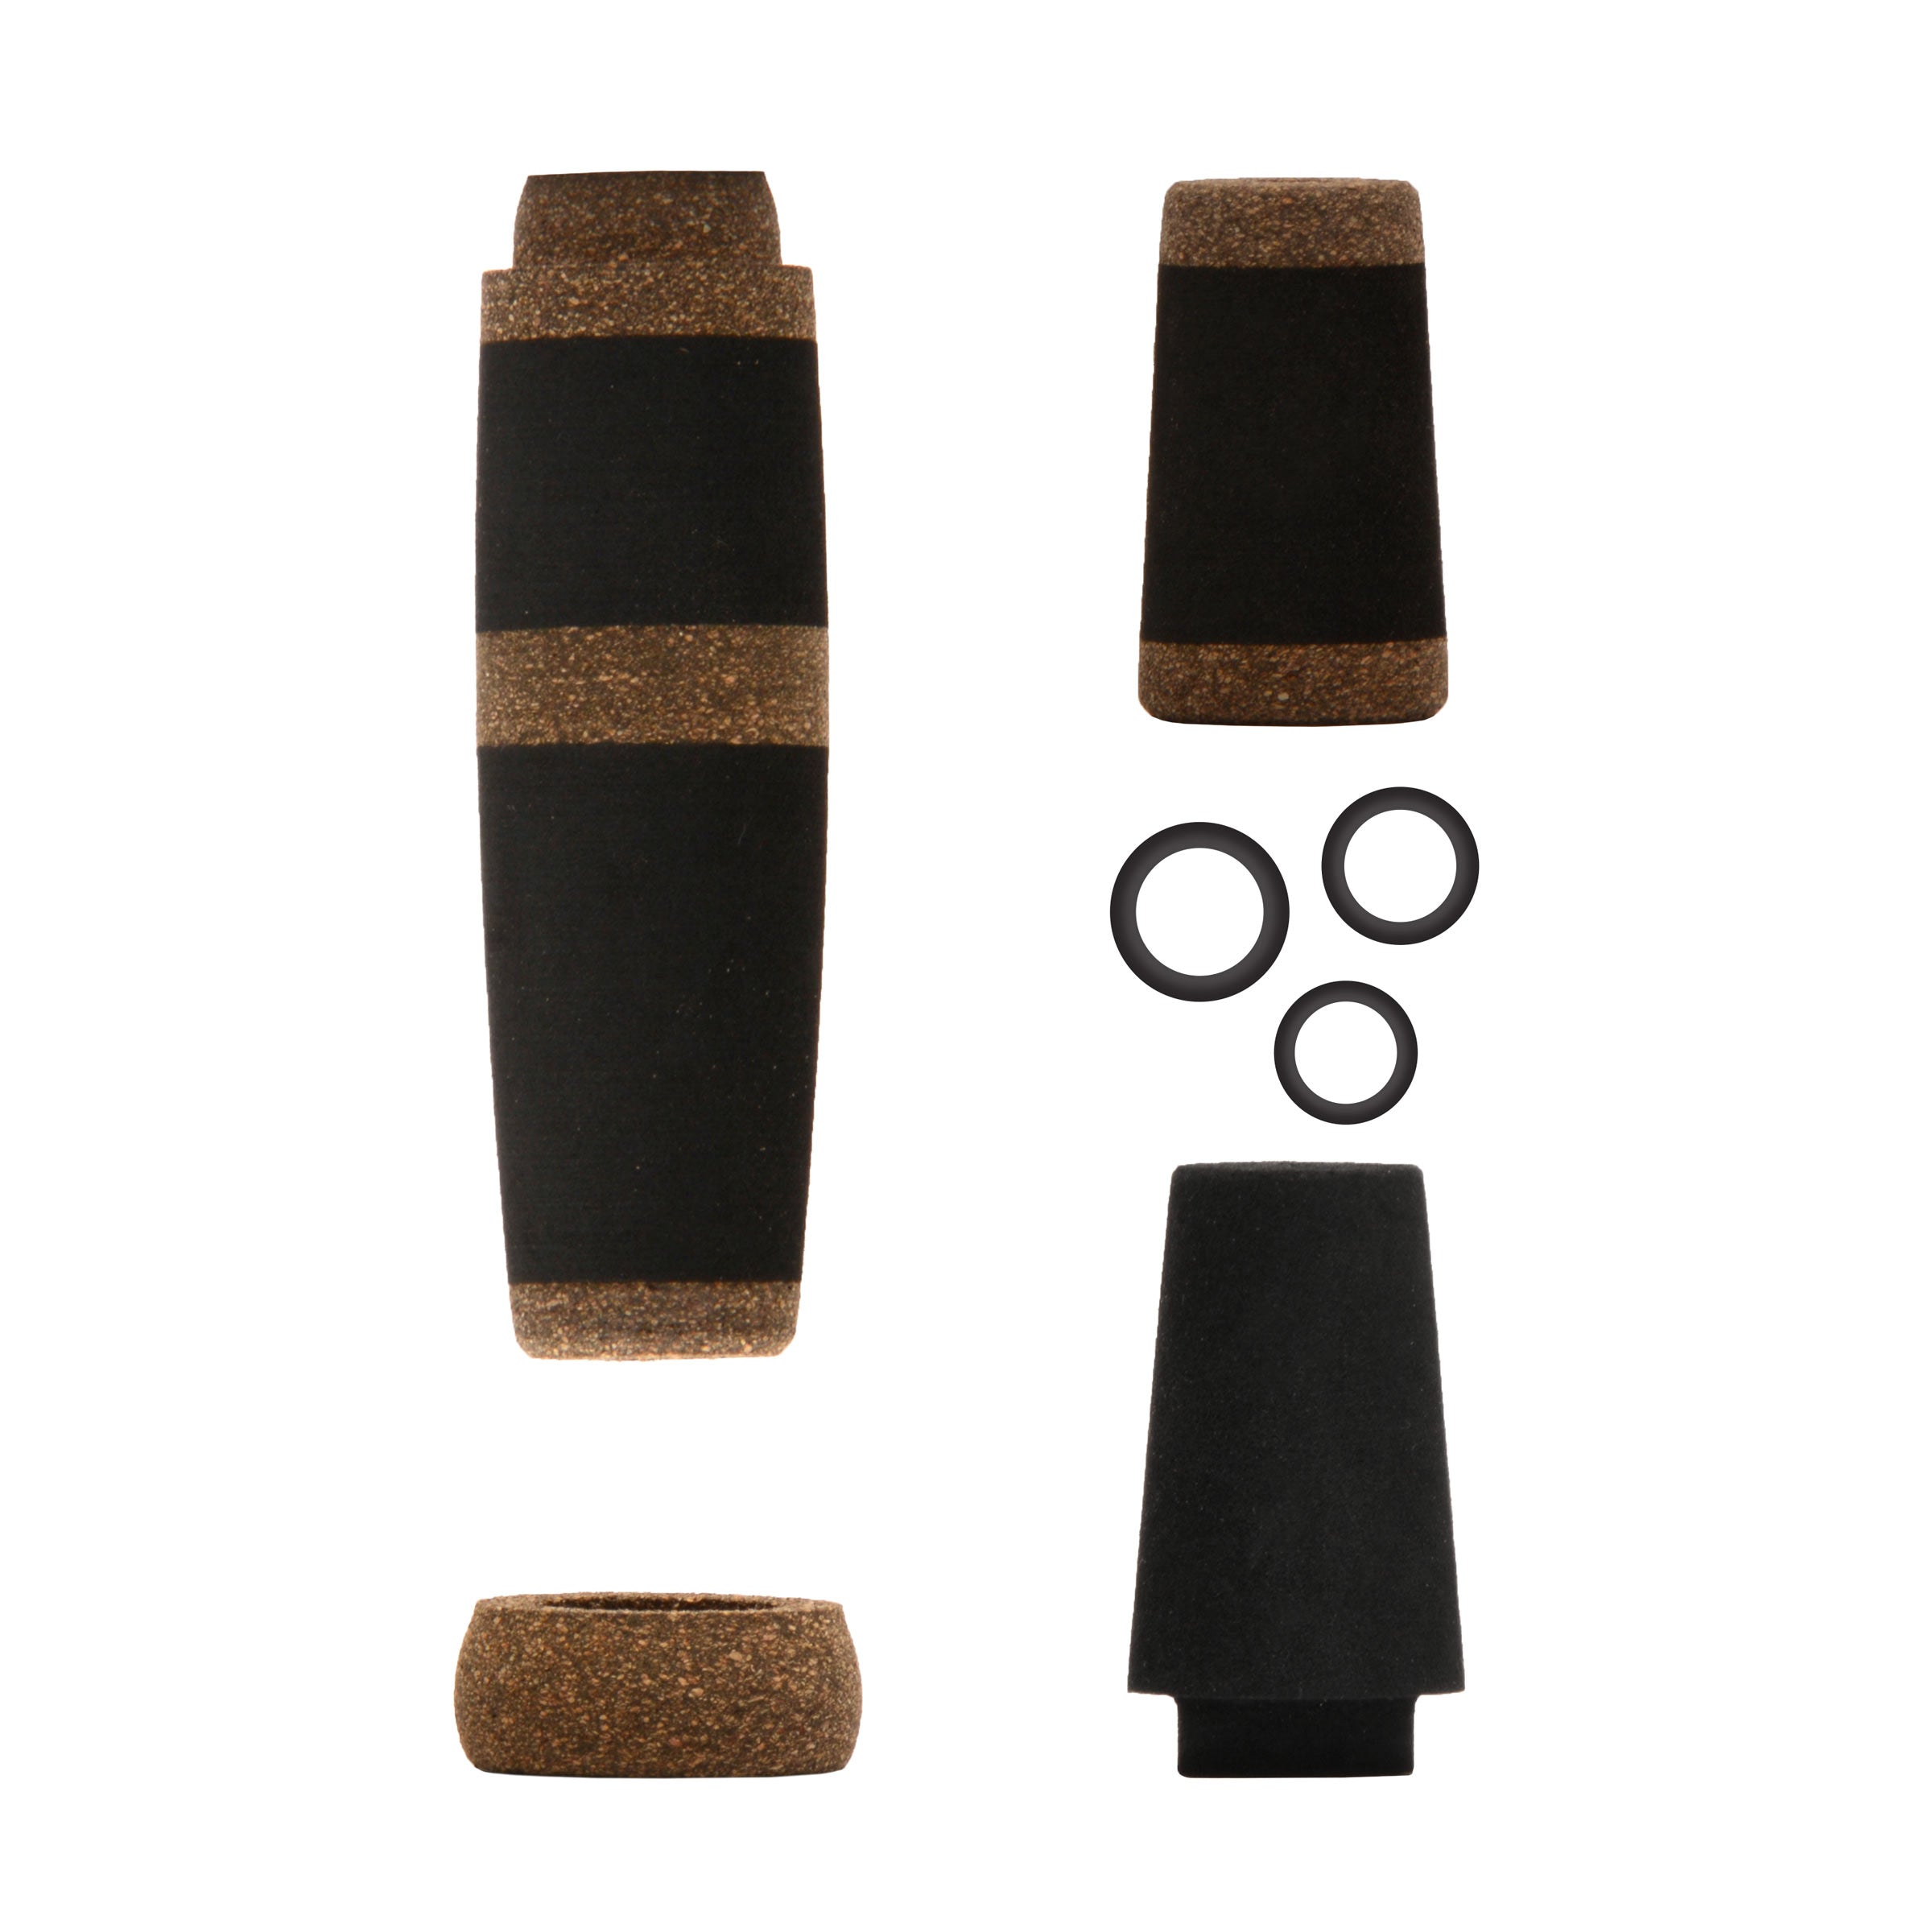 2-Tone Split Grip Kits for Casting Rods Black Eva & Rubberized Cork / 3.87 in. Rear | 1.75 in. Fore